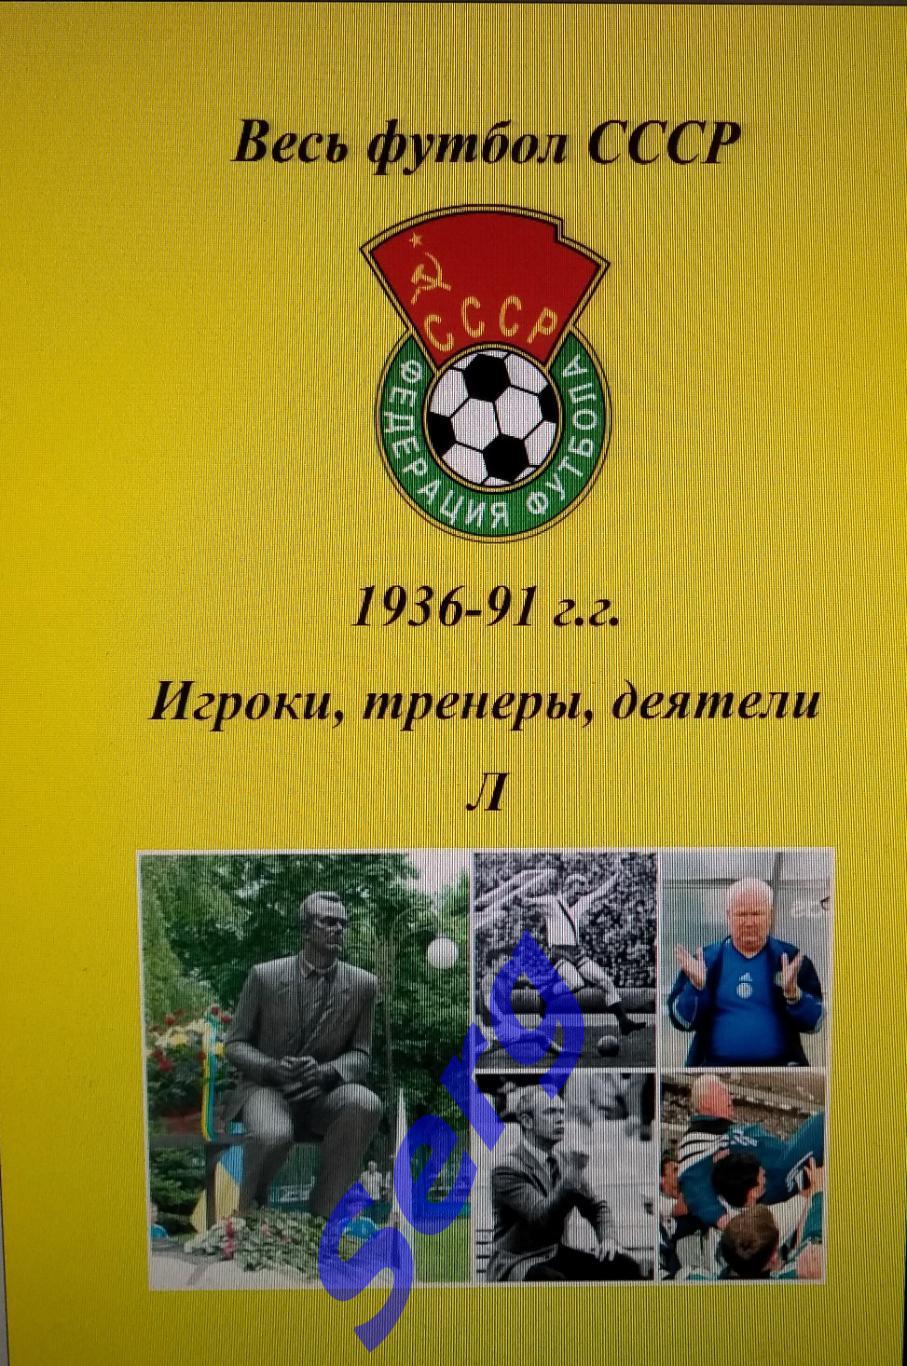 Весь футбол СССР. 1936-1991 г.г. Игроки, тренеры, деятели на букву Л